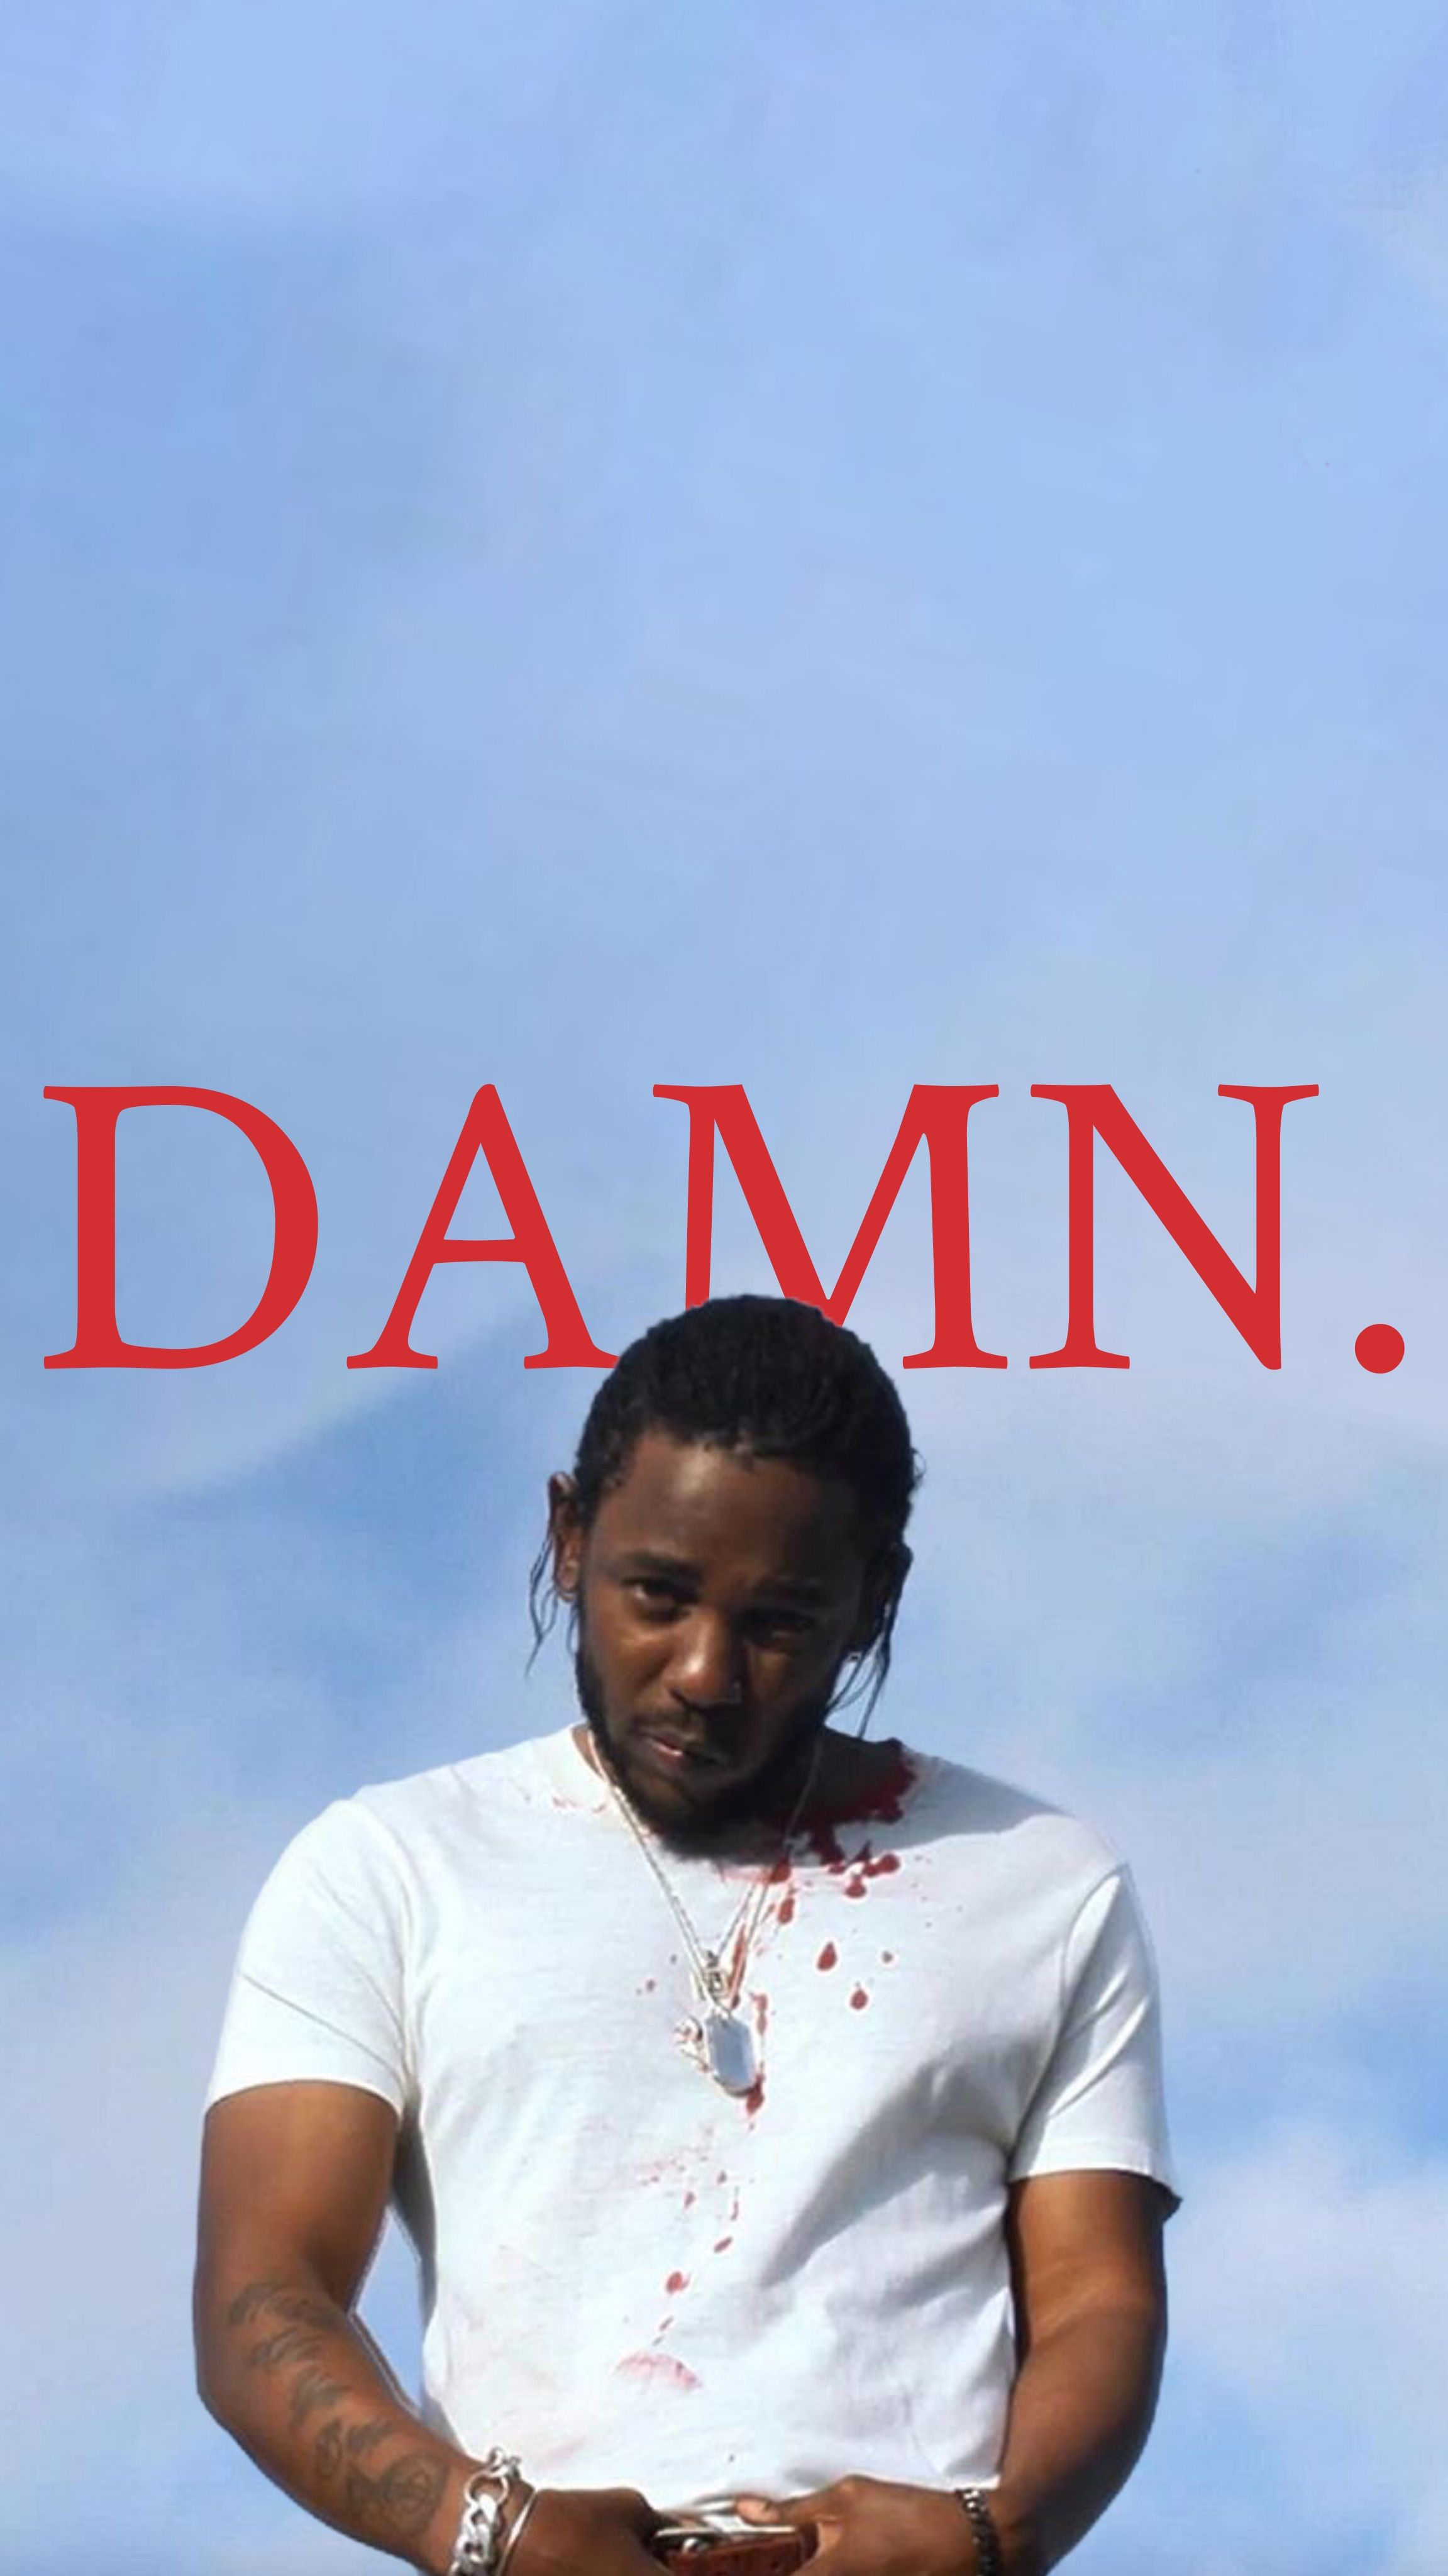 Kendrick Lamar Wallpapers - Wallpaper Cave